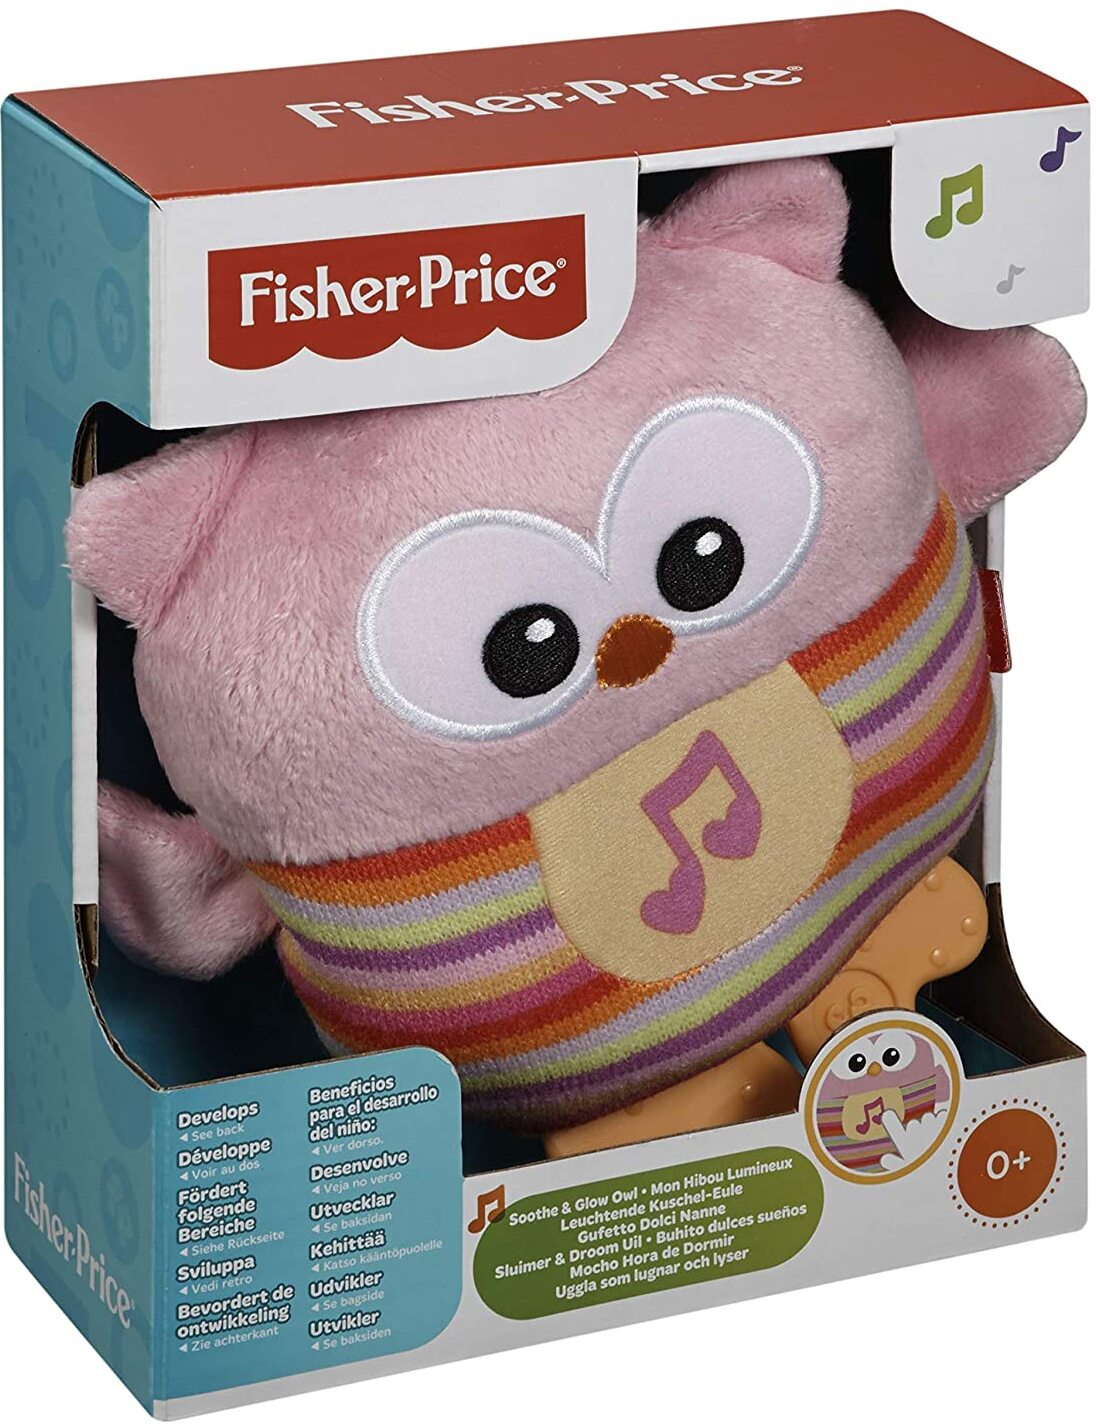 Fisher-Price CDN88 Leuchtende Kuschel Eule Plüschtier mit Eulengeräuschen mit Beißhilfe Babyerstausstattung, ab 0 Monaten, rosa